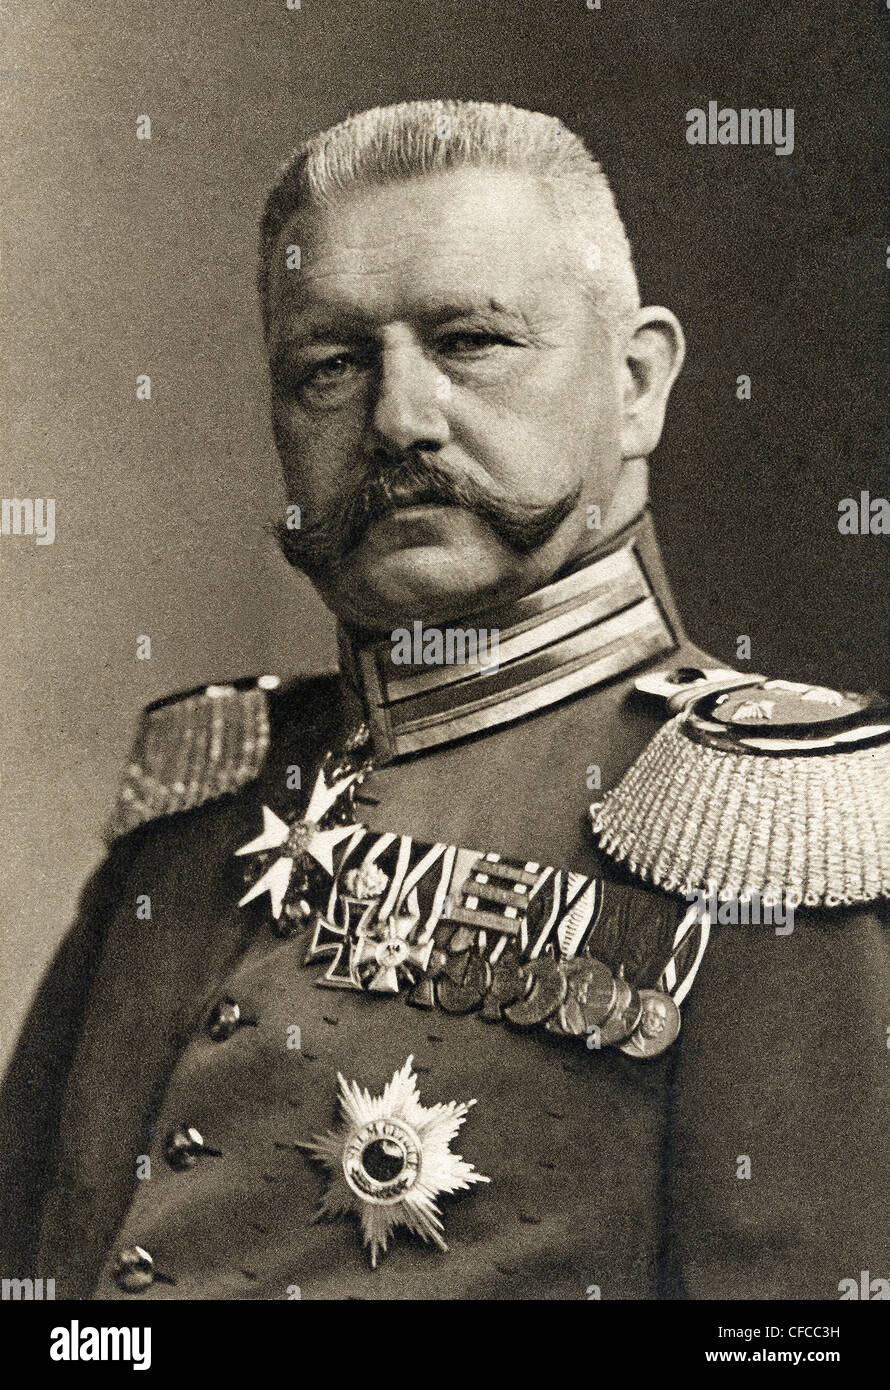 Paul von Hindenburg, Hindenburg, German, Germany, President, Politician, 1912, General, Field Marshal, World War I, War, World W Stock Photo